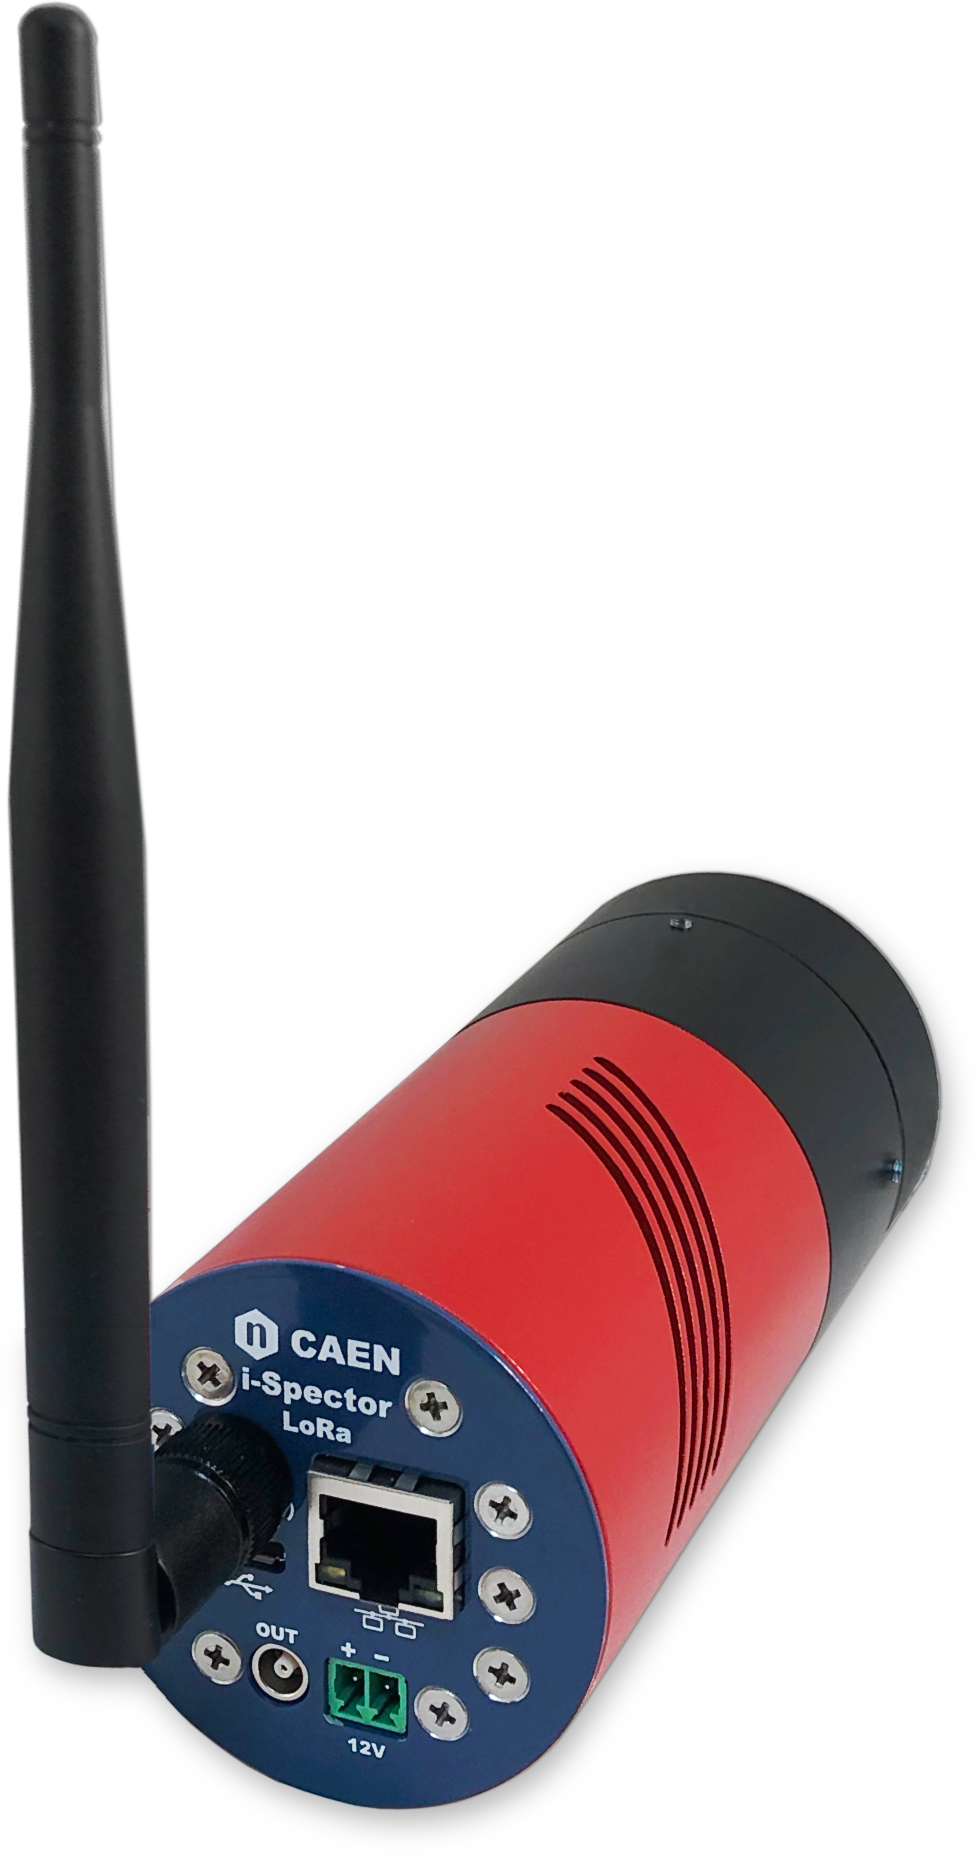 CAEN i-Spector Digital модуль кремнієвого фотопомножувача для гамма-спектроскопії з цифровим MCA, 20-80 V, Ø 60 mm, h 90 mm (OEM), Ø 60 mm, h 135 mm (ASSEMBLY)